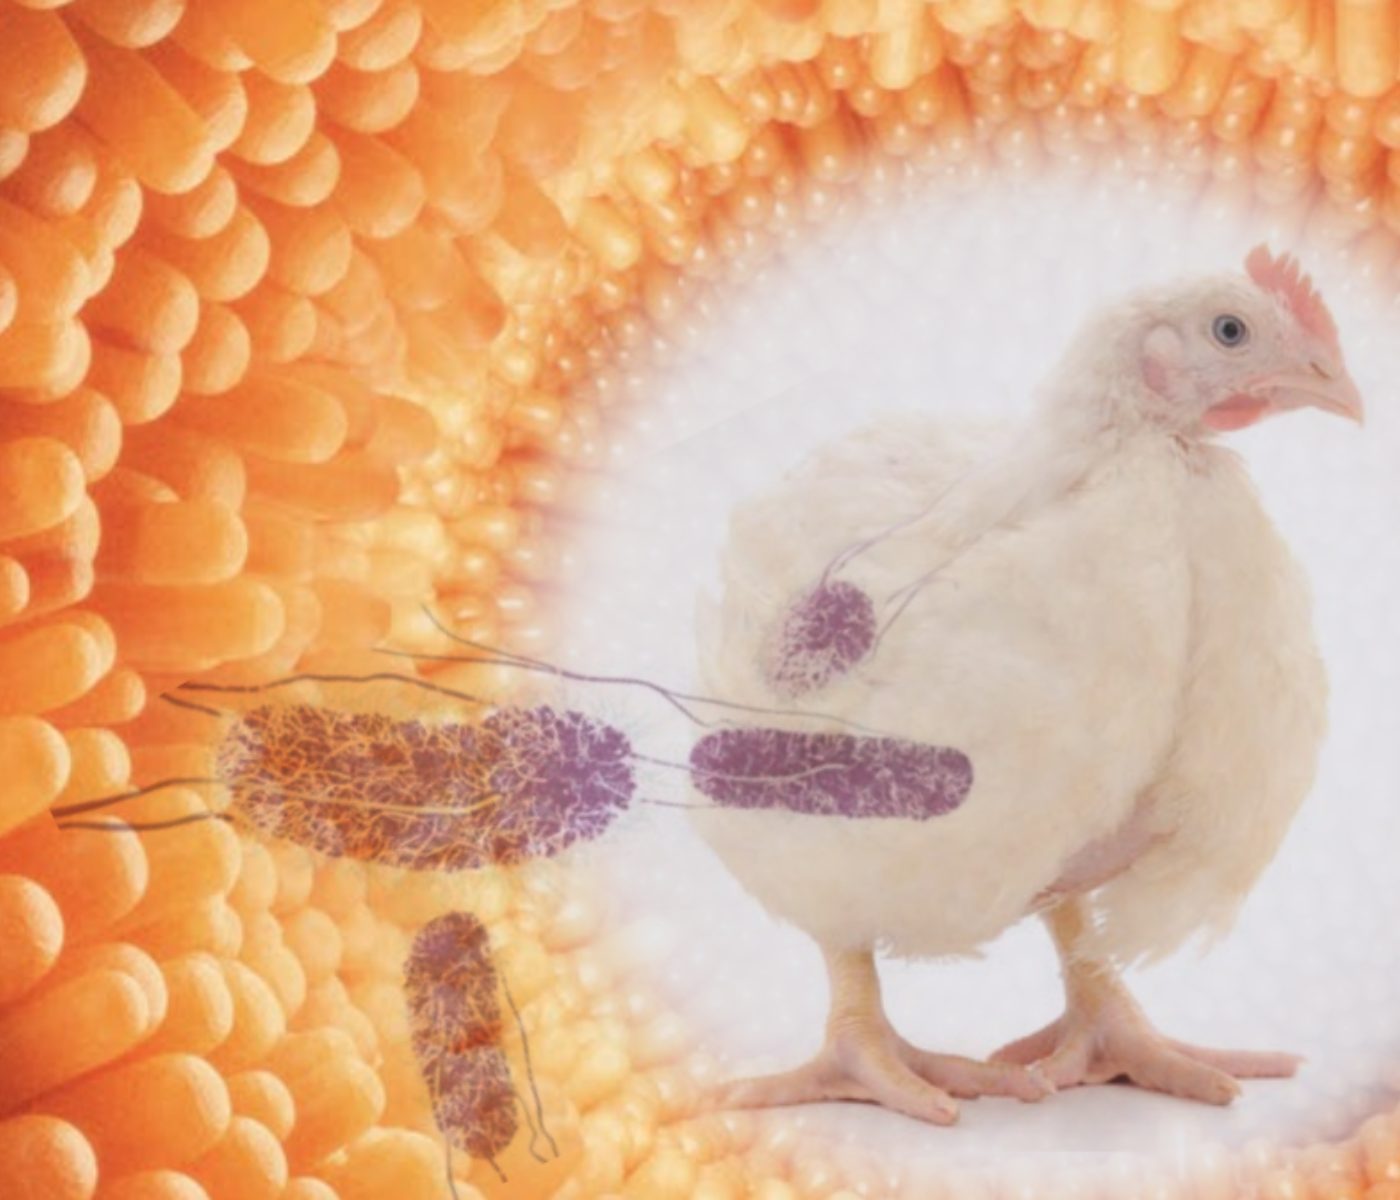 Saúde intestinal de frangos tratados com eubióticos desafiados com Salmonella